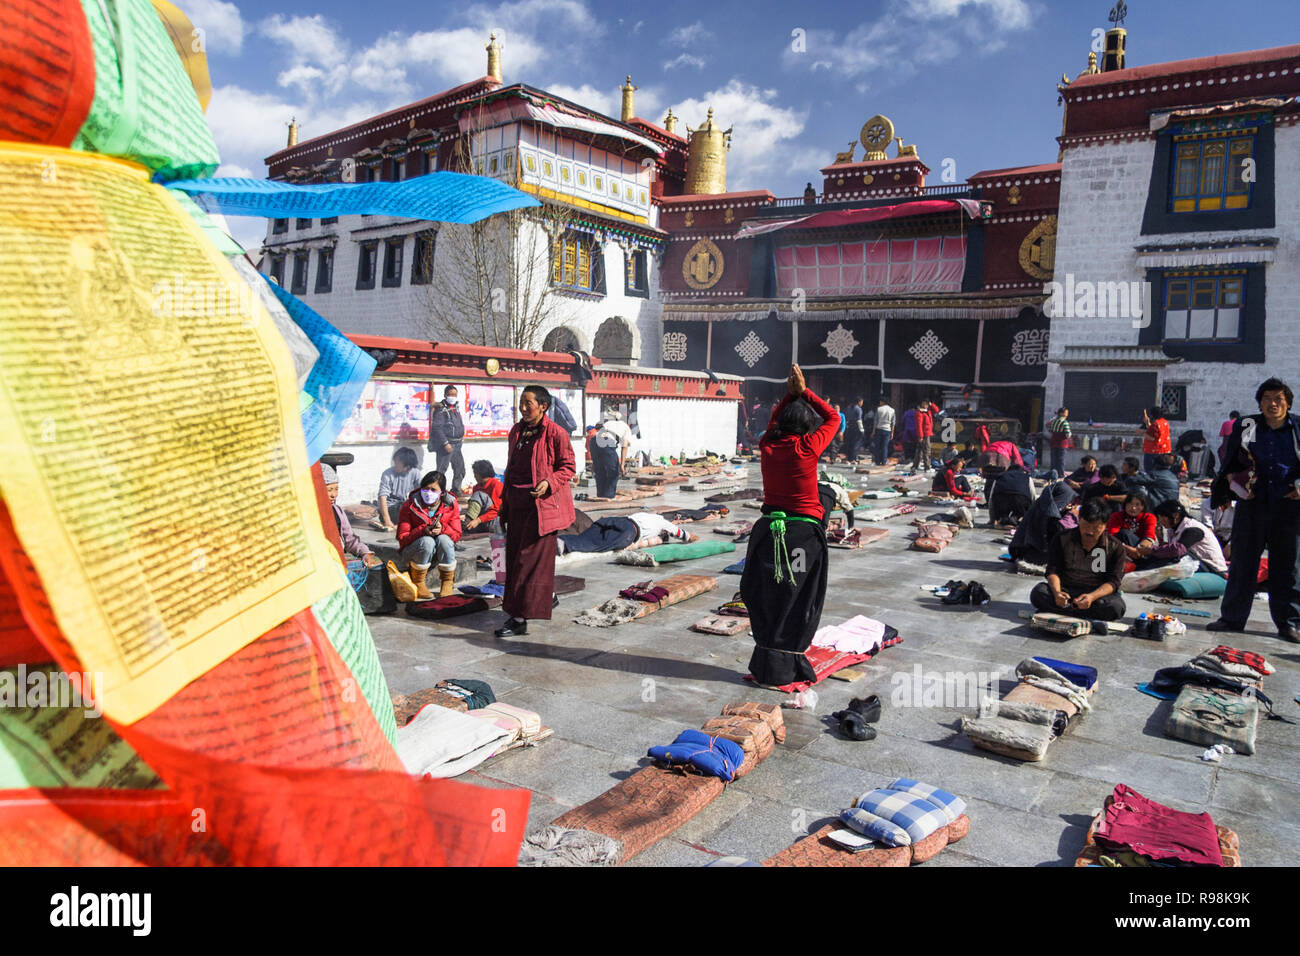 Lhasa, Tibet autonomen Region, China: tibetisch-buddhistischen Pilger postrate und Beten um den Jokhang Tempel in Barkhor Platz. Der Jokhang ist als Stockfoto